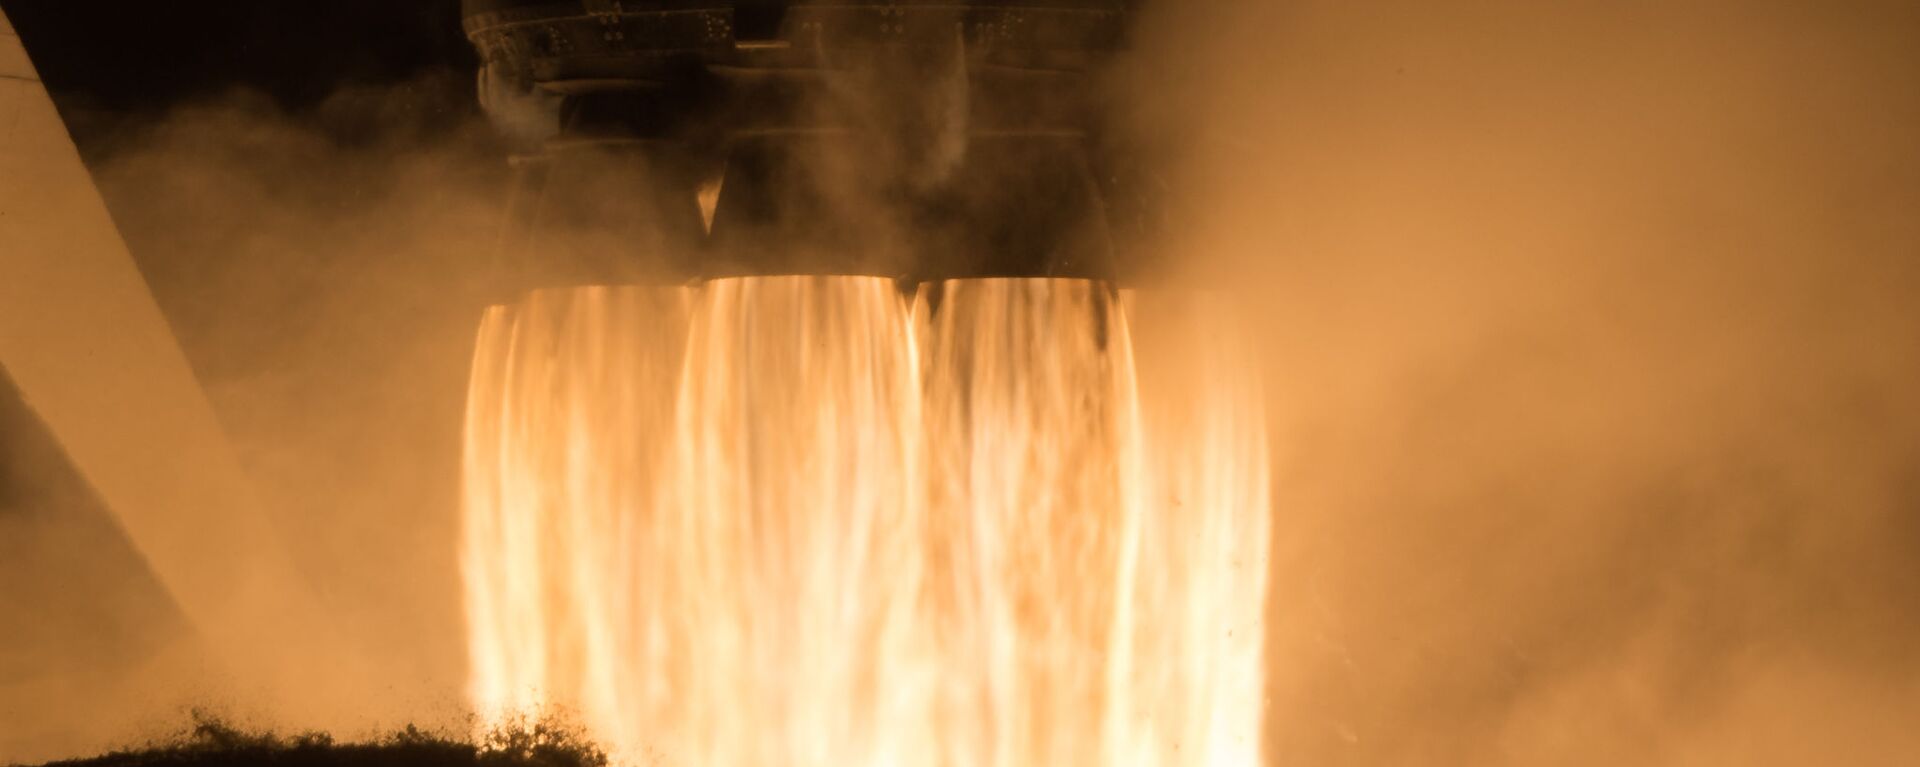 إطلاق مركبة سبيس إكس والتي تحمل اسم كرو دراغون عن طريق صاروخ فالكون 9، من مركز كينيدي للفضاء التابع لناسا في كيب كانافيرال بولاية فلوريدا، الولايات المتحدة 16 نوفمبر 2020 - سبوتنيك عربي, 1920, 01.08.2022